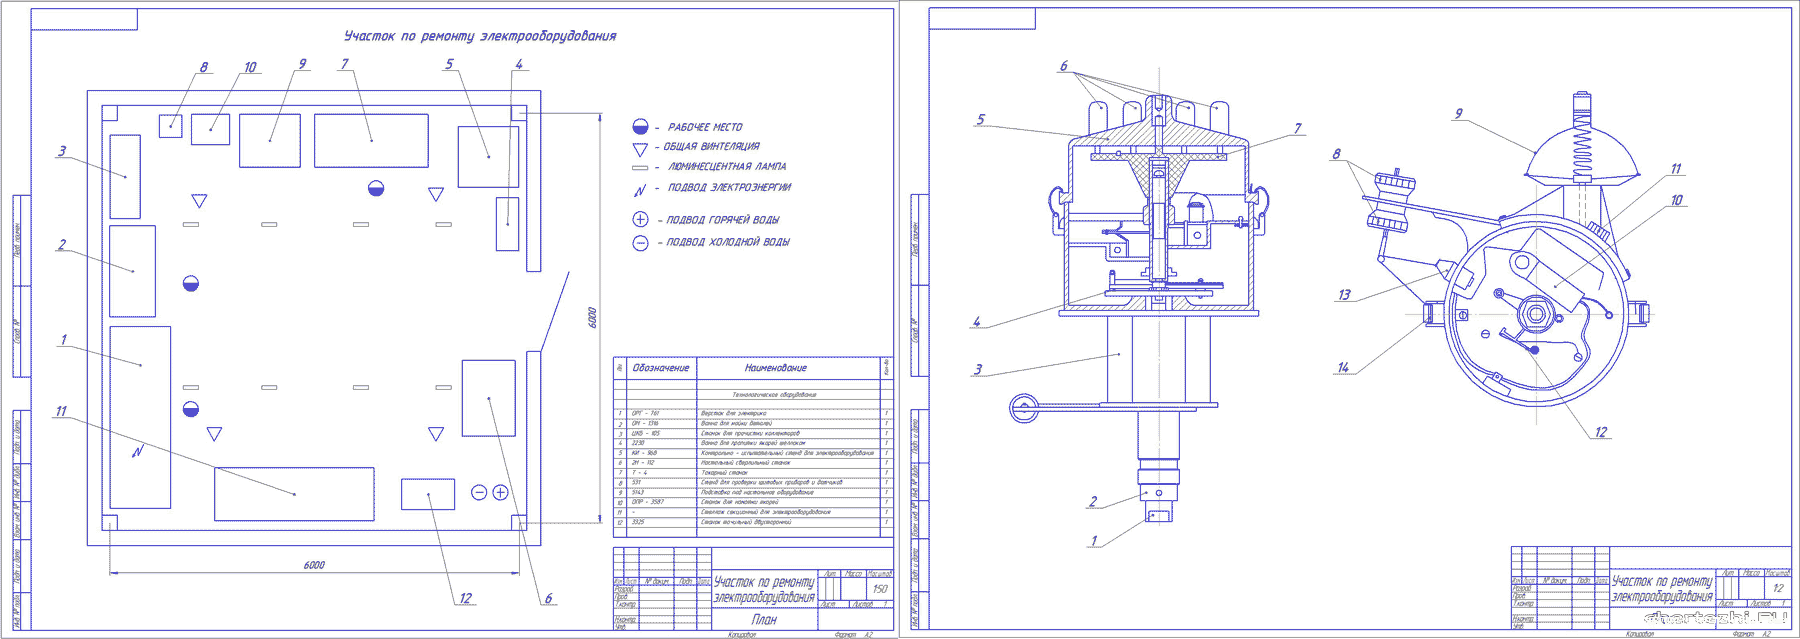 Курсовой проект (техникум) - Ремонт приборов системы зажигания ЗиЛ 4314 на примере трамблера